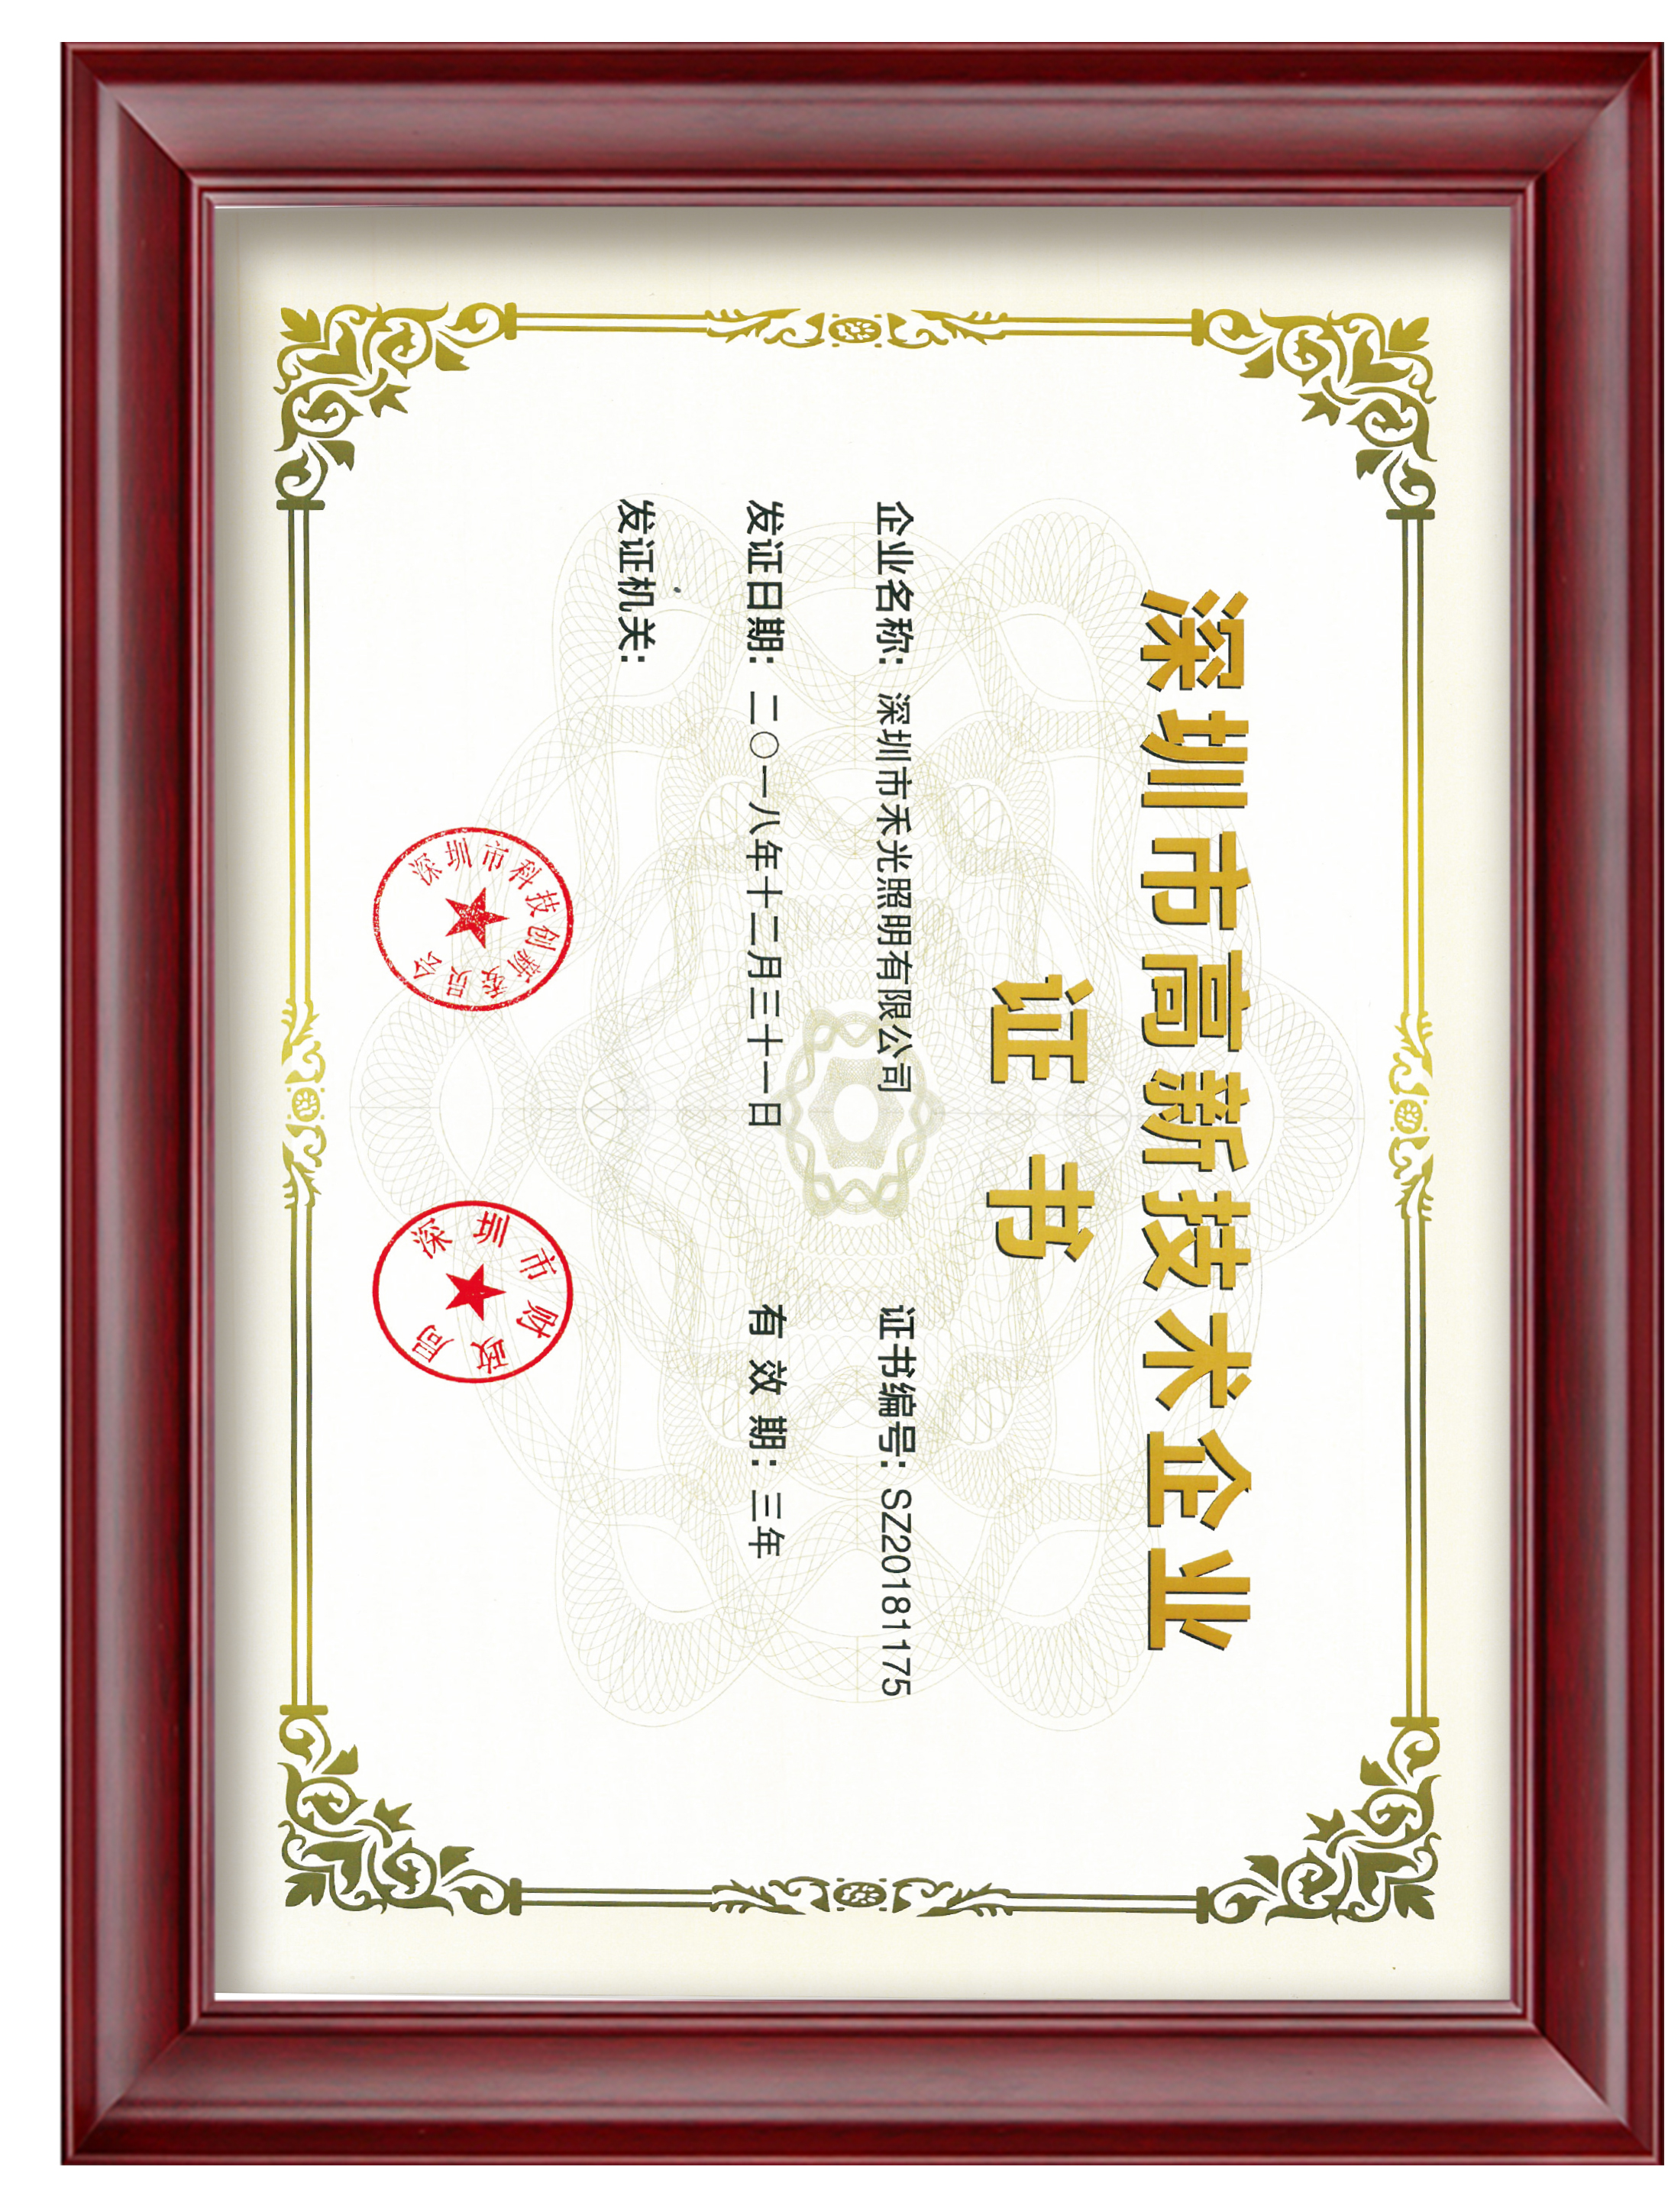 12.Shenzhen High-tech Enterprise Certificate